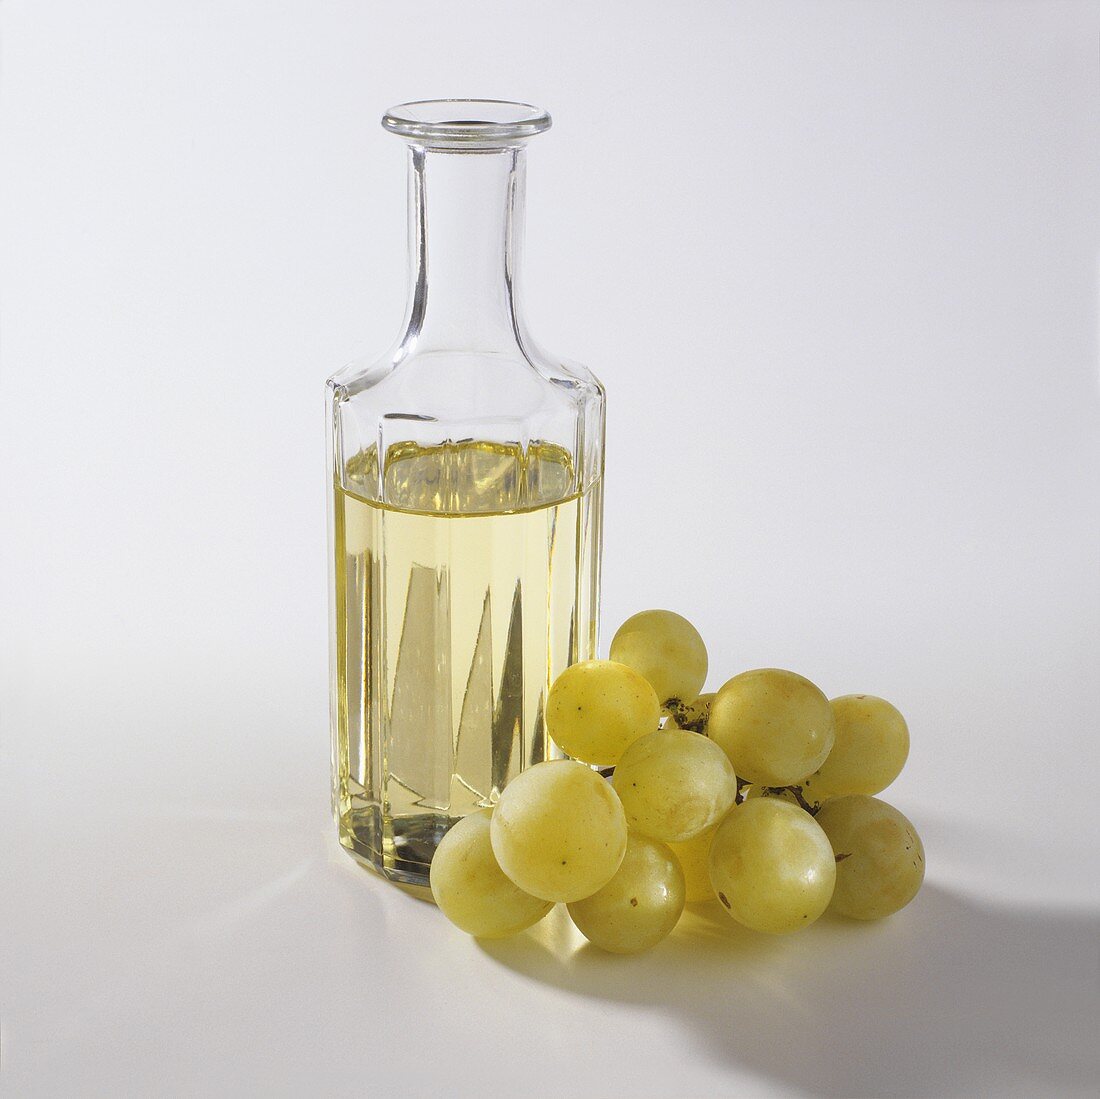 Traubenkernöl in einer Glasflasche, daneben Trauben